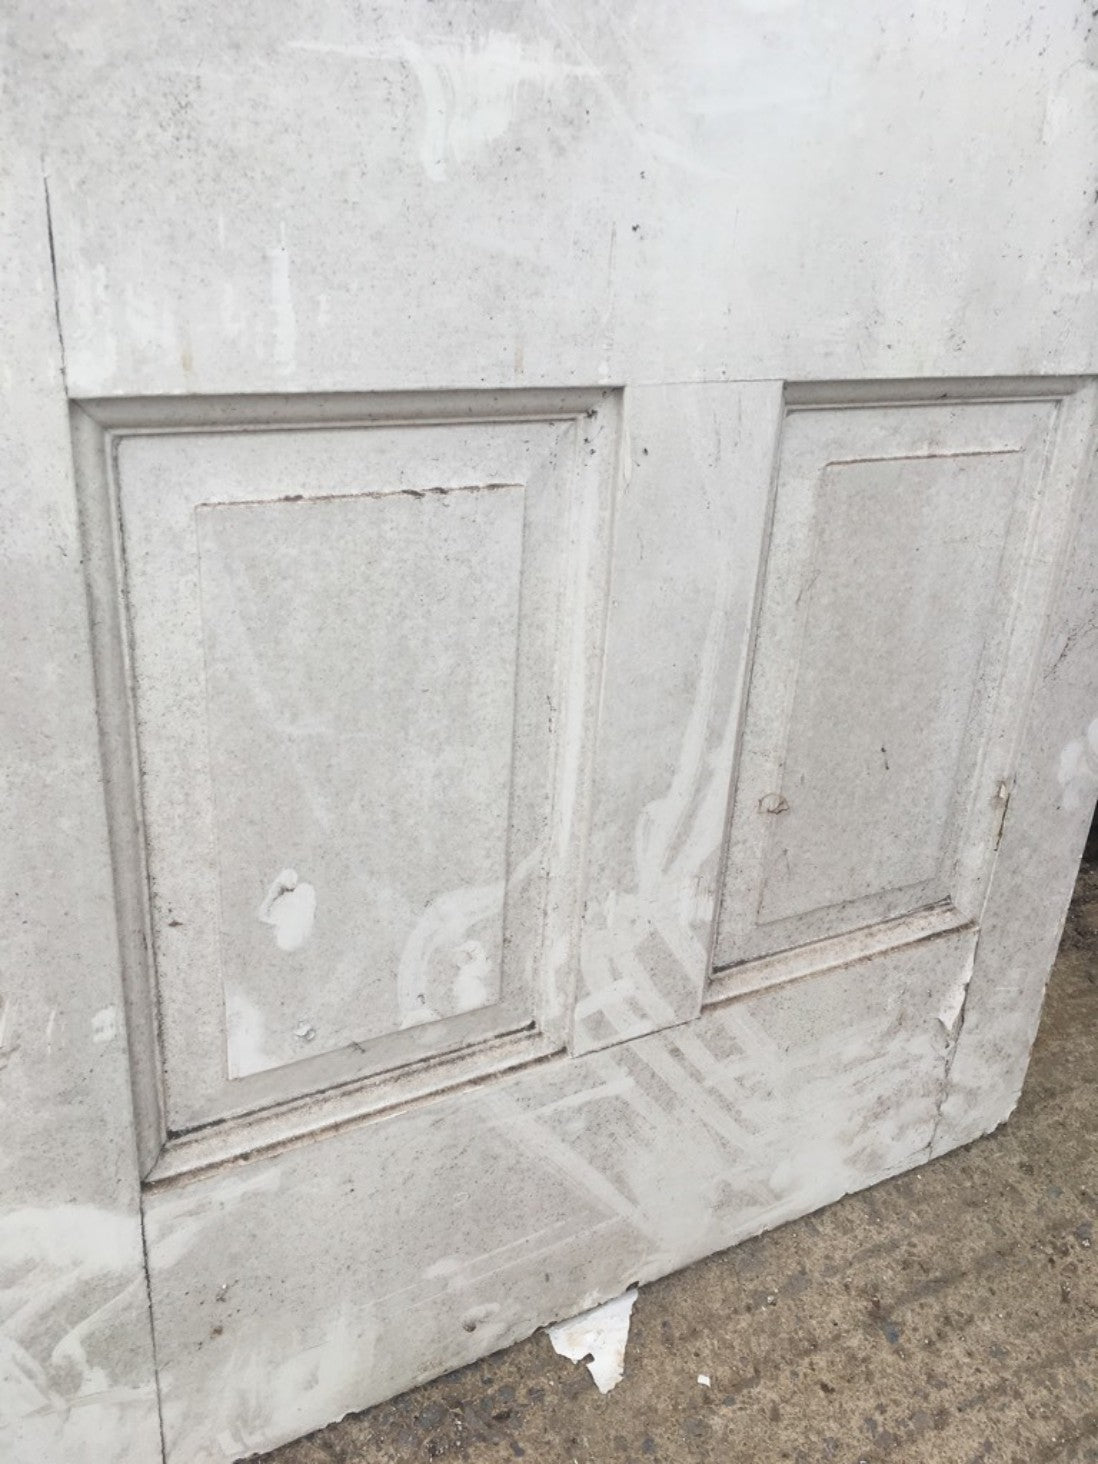 35”x82 3/8” Reclaimed Victorian Painted Pine Six Panel Internal Door